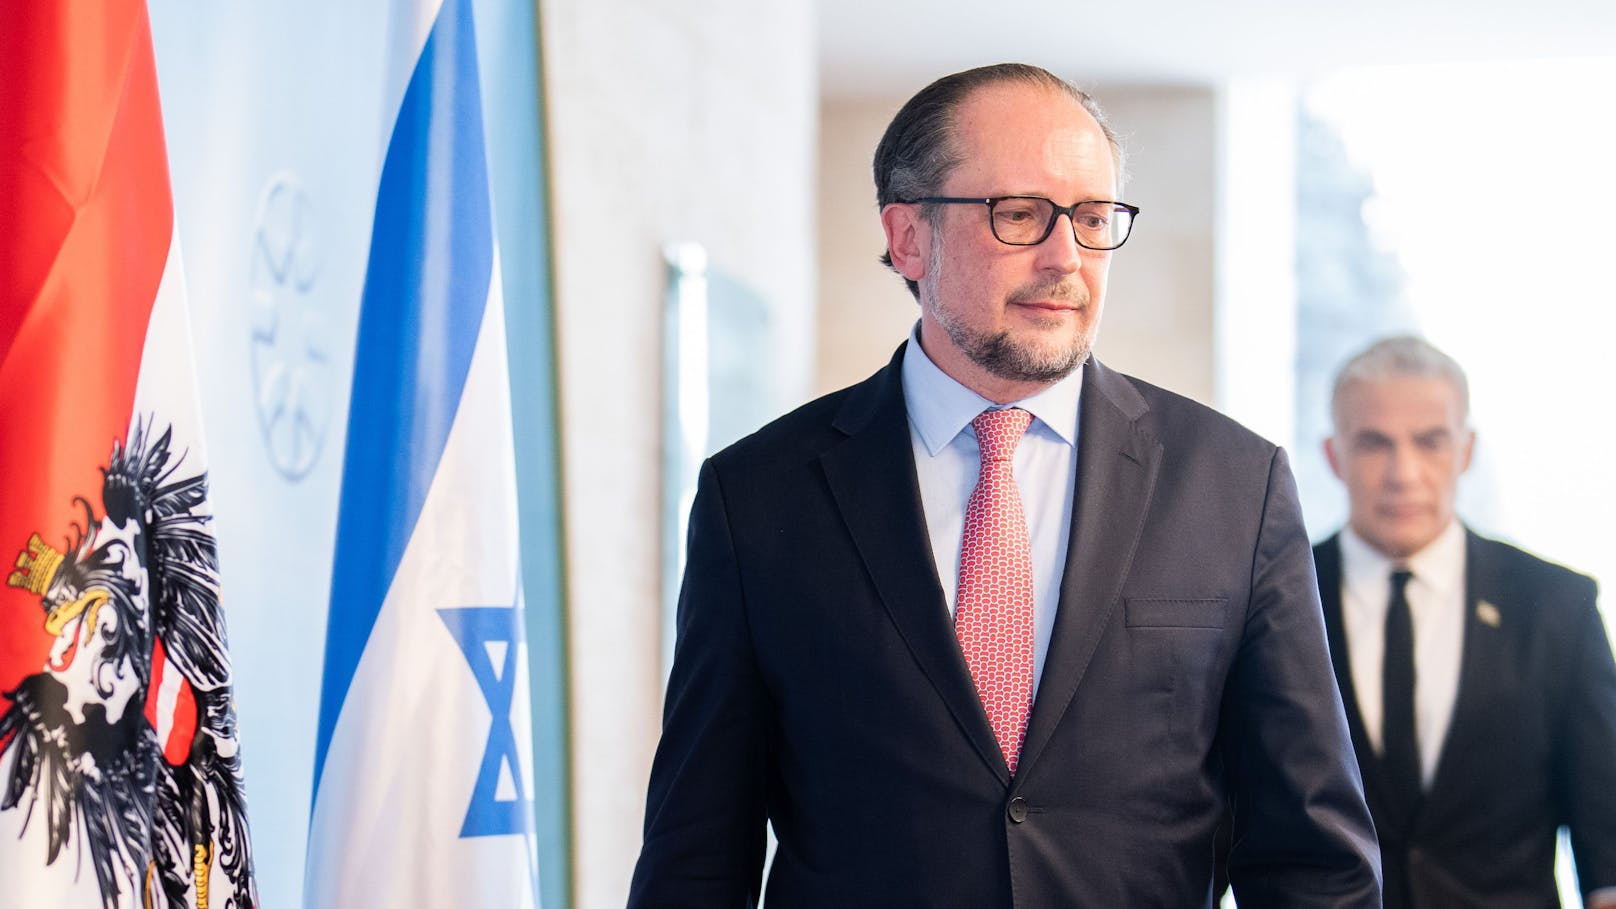 Schallenberg drängt Israel zu einer Zwei-Staaten-Lösung